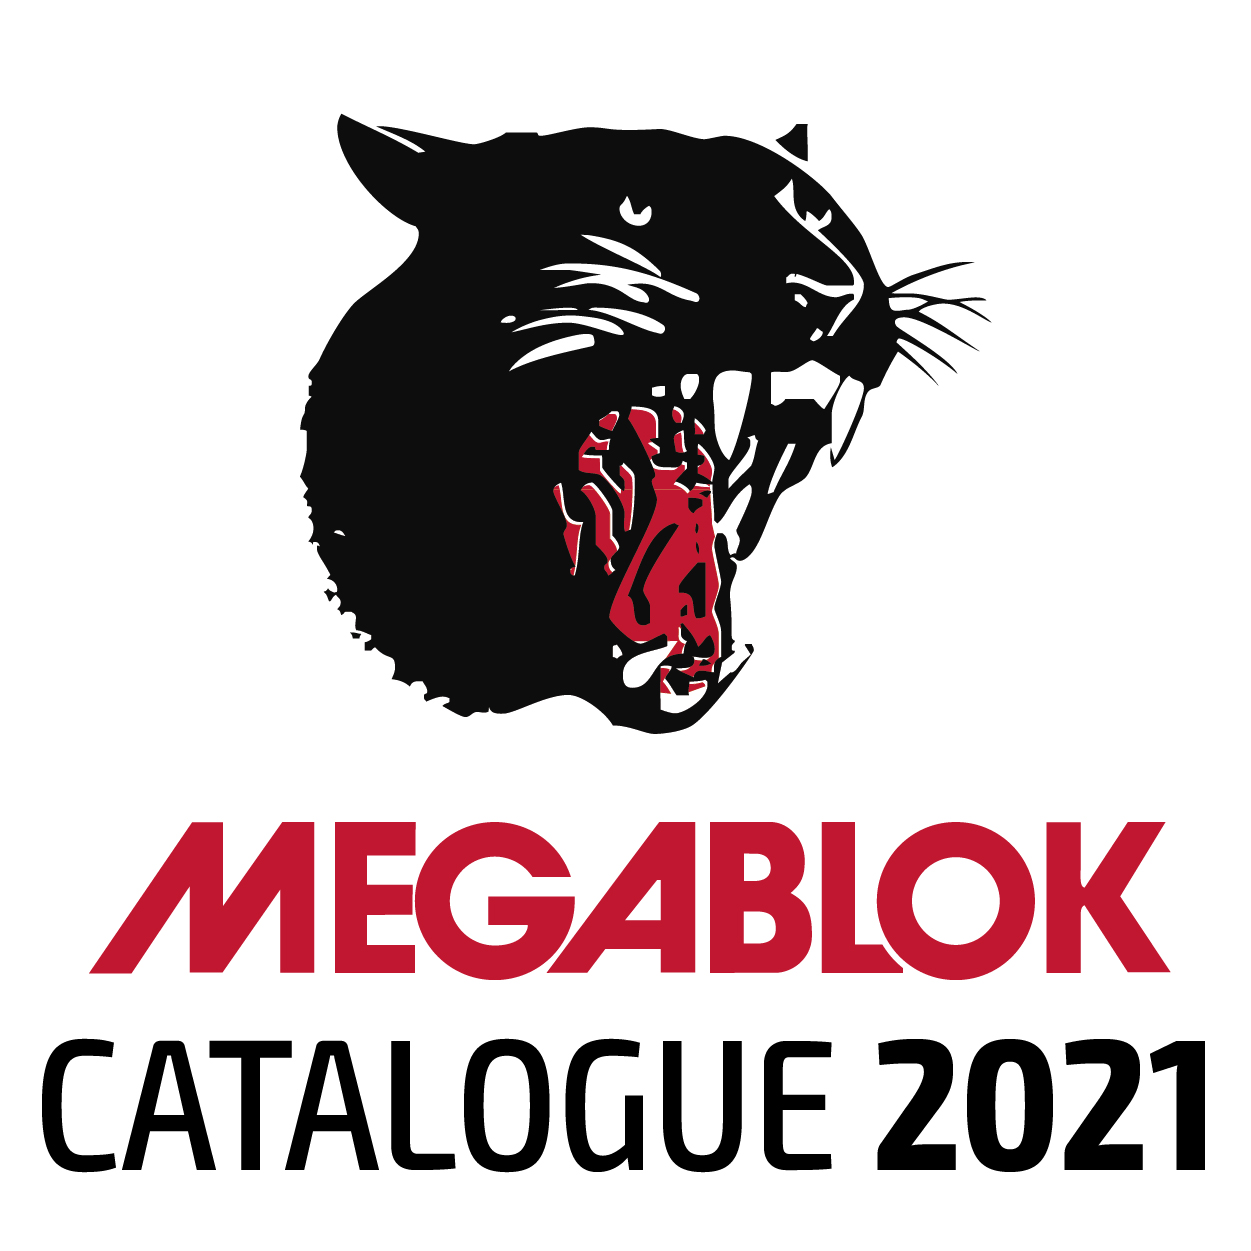 CATALOGUE 2021